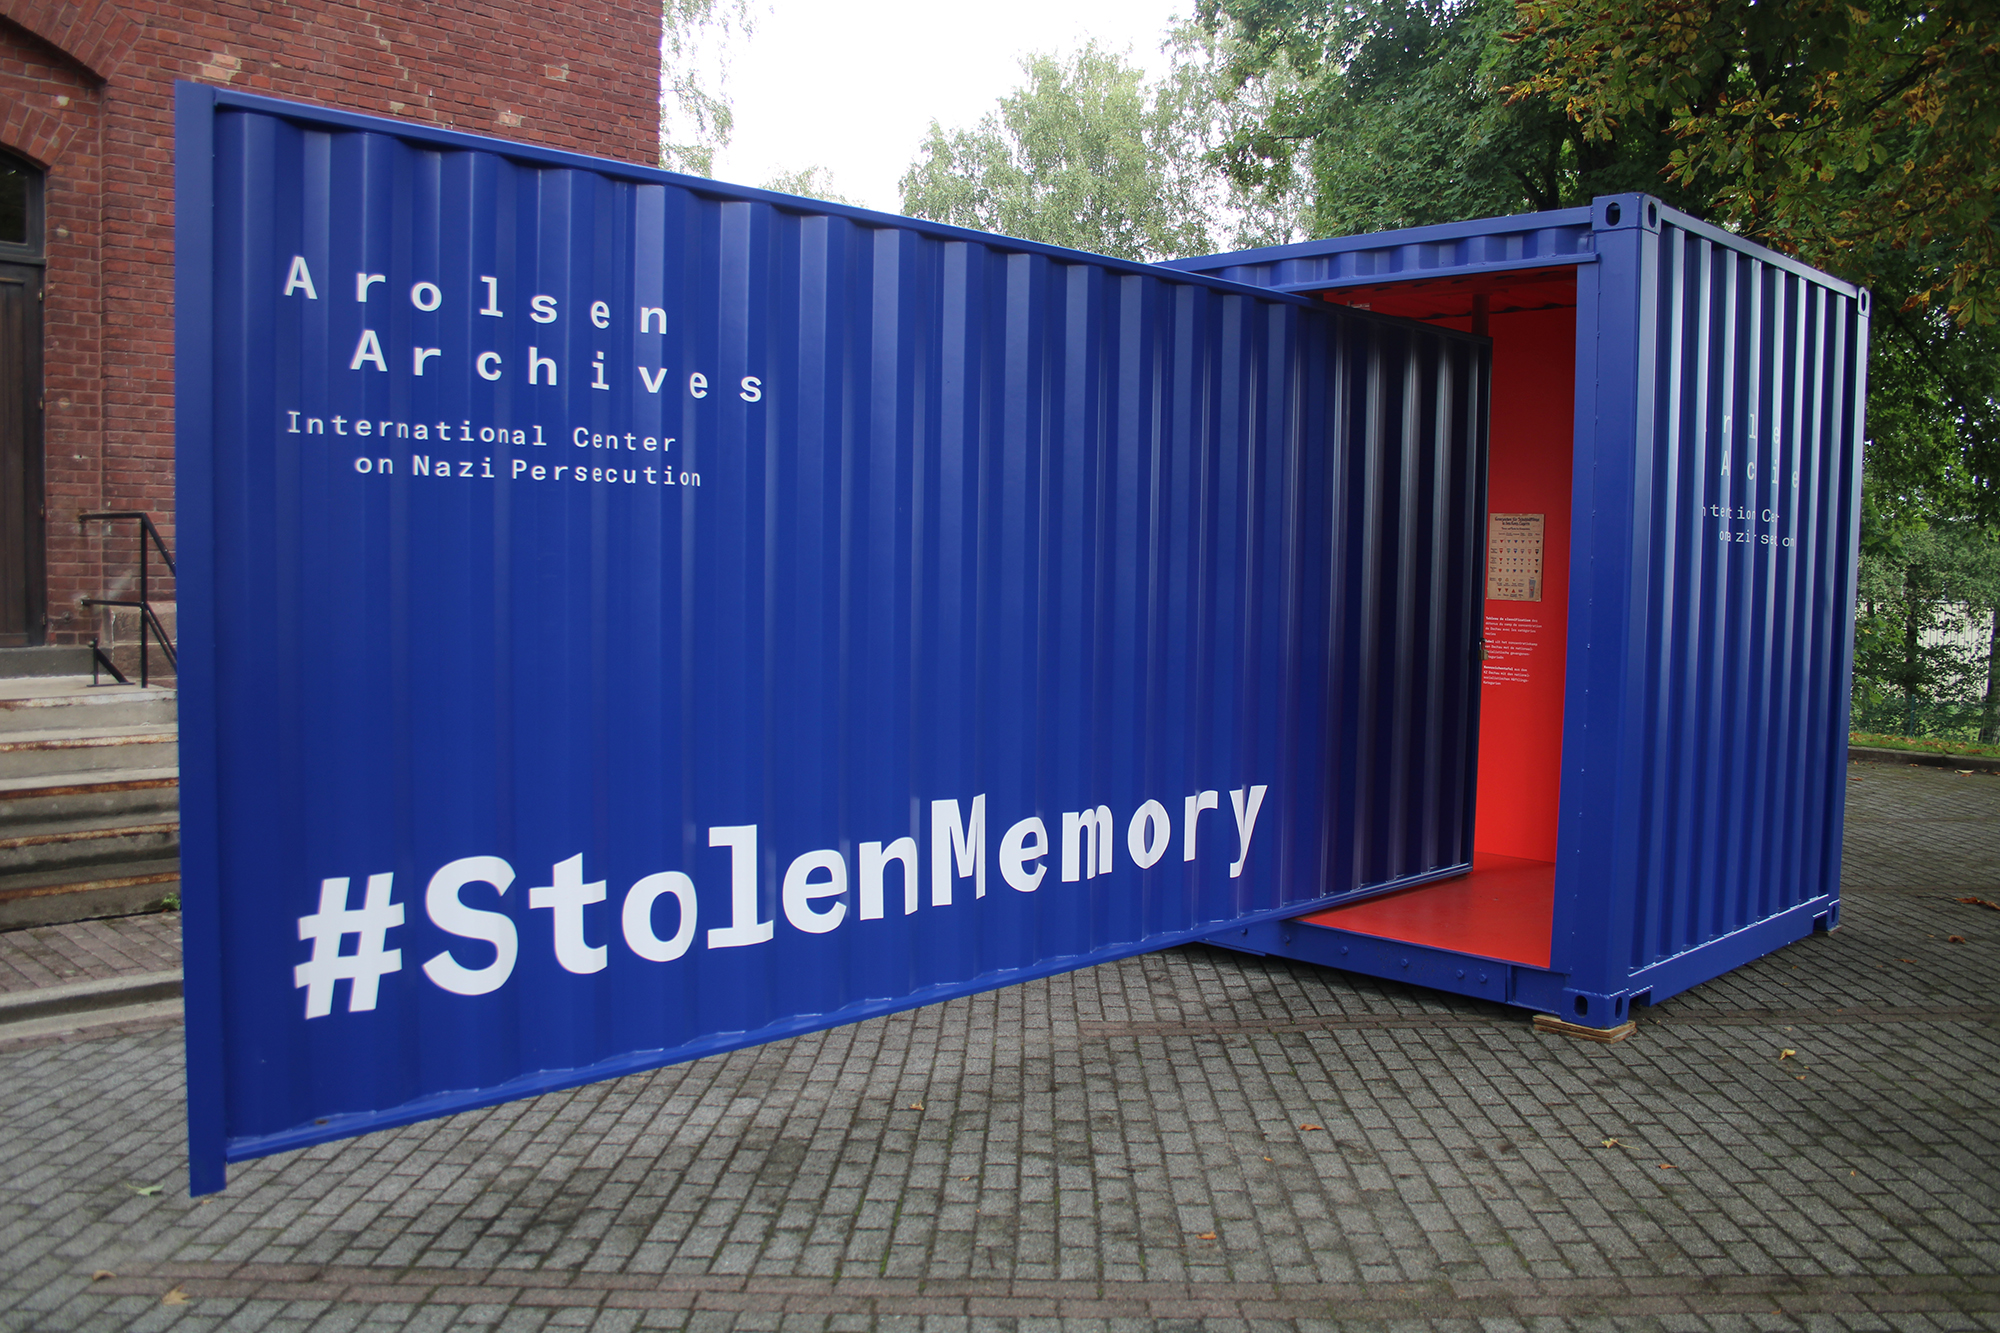 Ausstellung "Stolen Memory" (Bild: Michaela Brück/BRF)